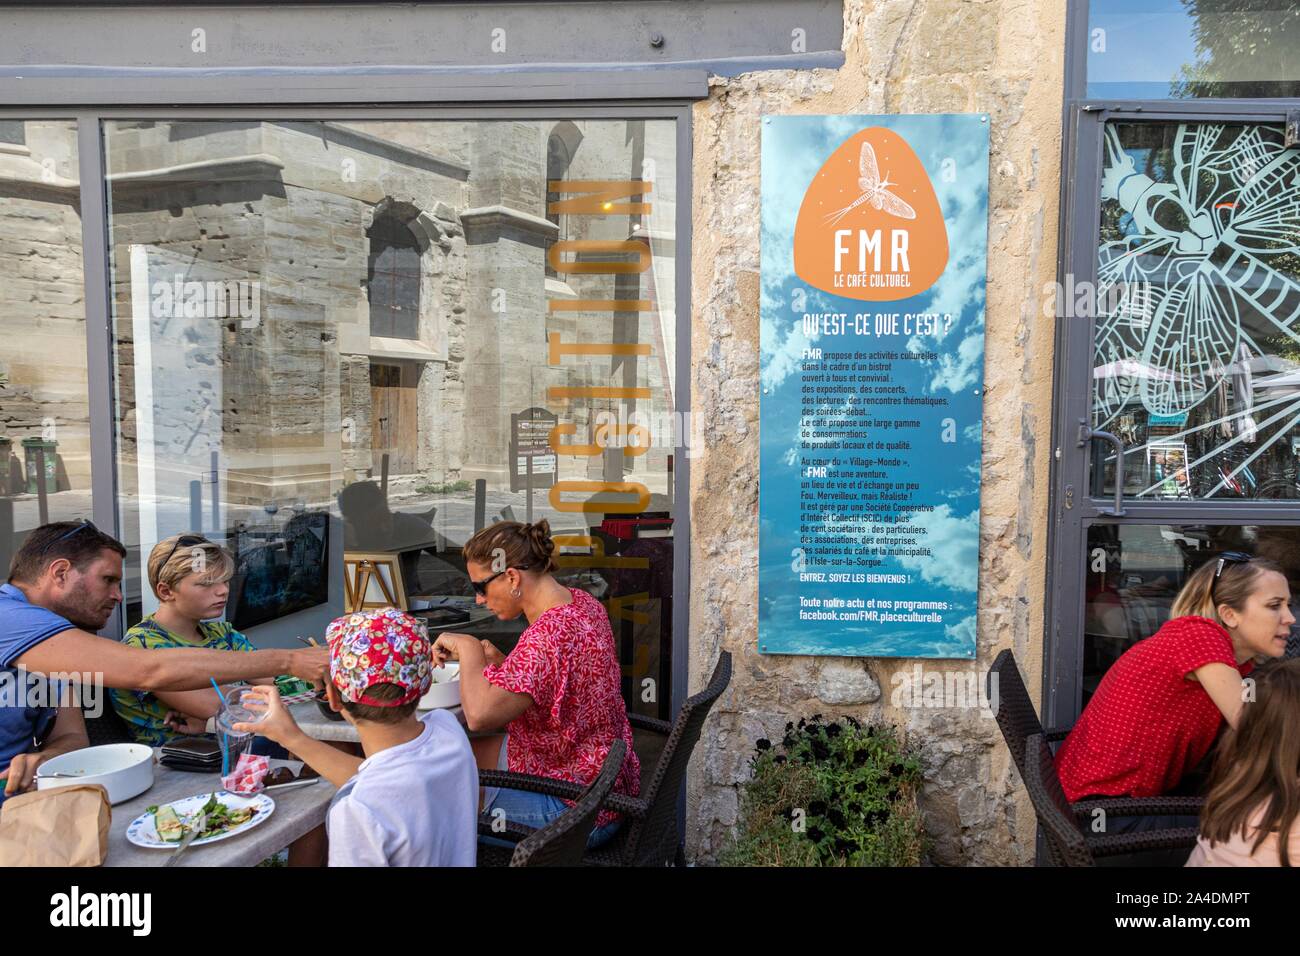 Kulturelle CAFE FMR mit seinen kulturellen Aktivitäten und Ausstellungen, PLACE DE LA LIBERTE, Isle-sur-la-Sorgue, Vaucluse, Luberon, Frankreich Stockfoto